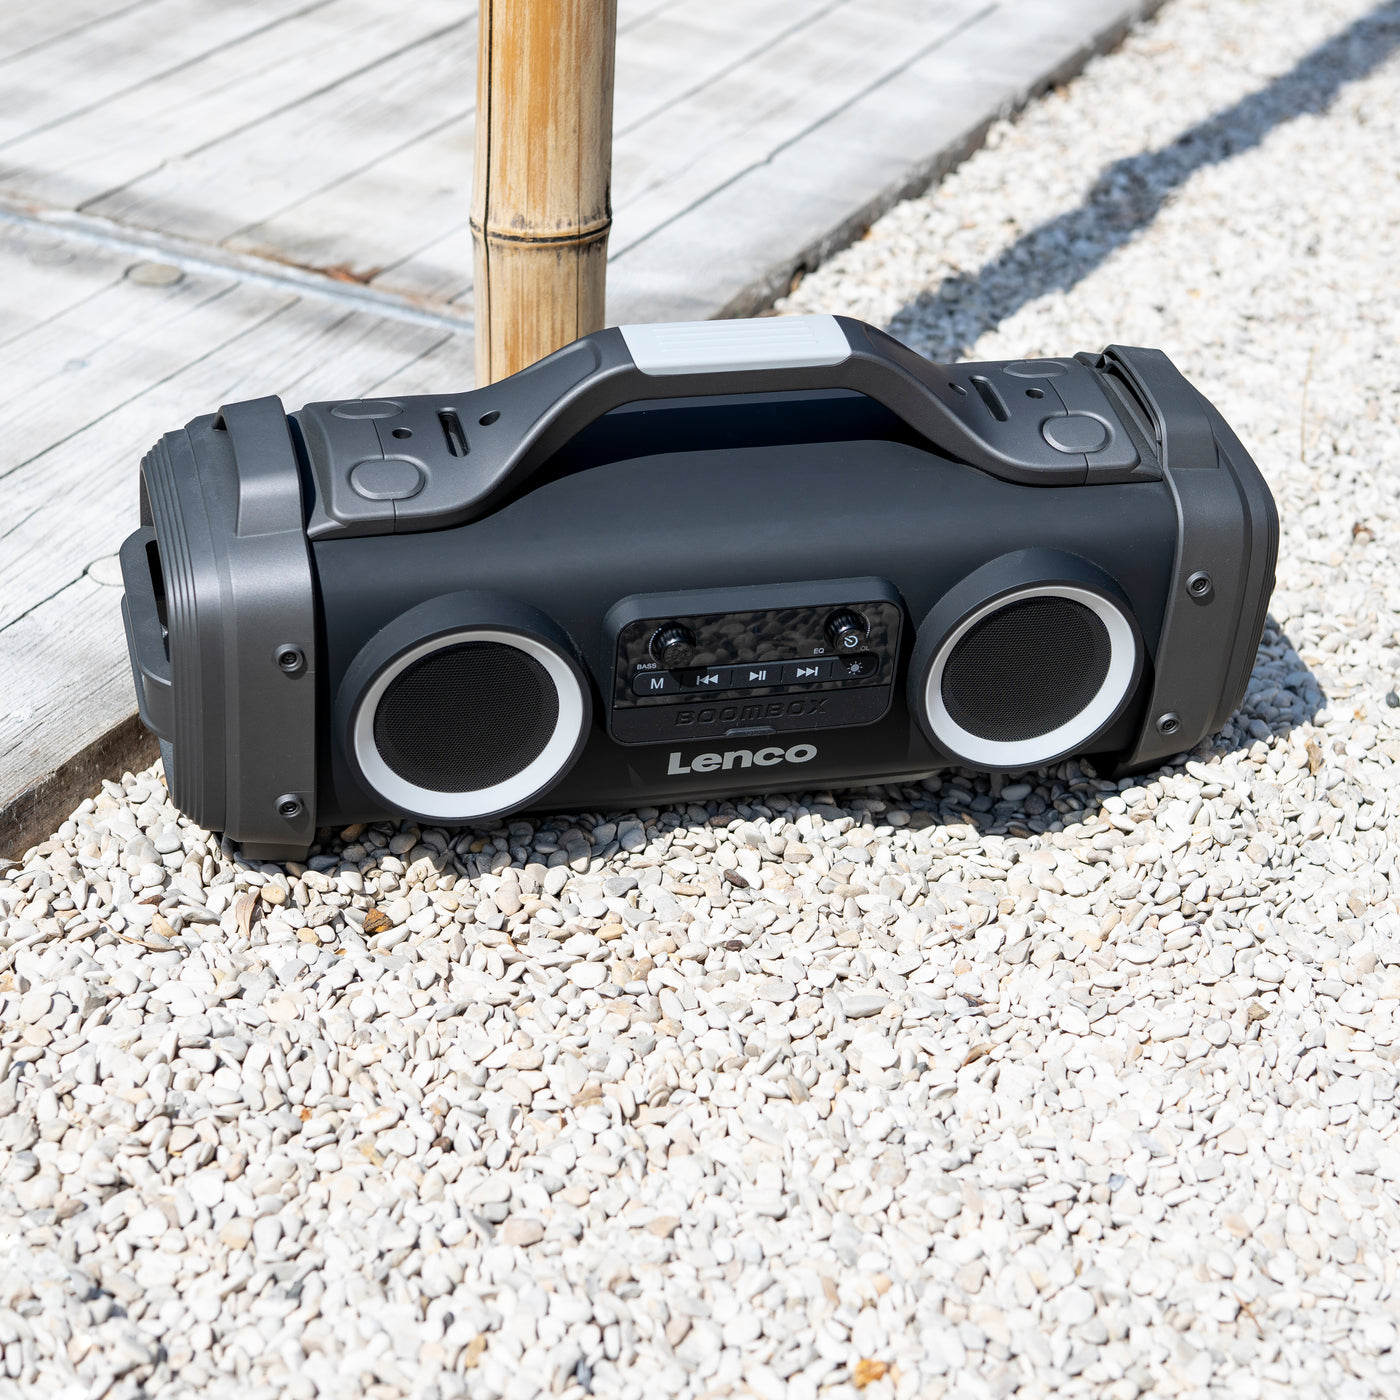 LENCO SPR-200BK - Odporny na zachlapania głośnik Bluetooth® z radiem FM USB i micro SD z efektami świetlnymi - Czarny